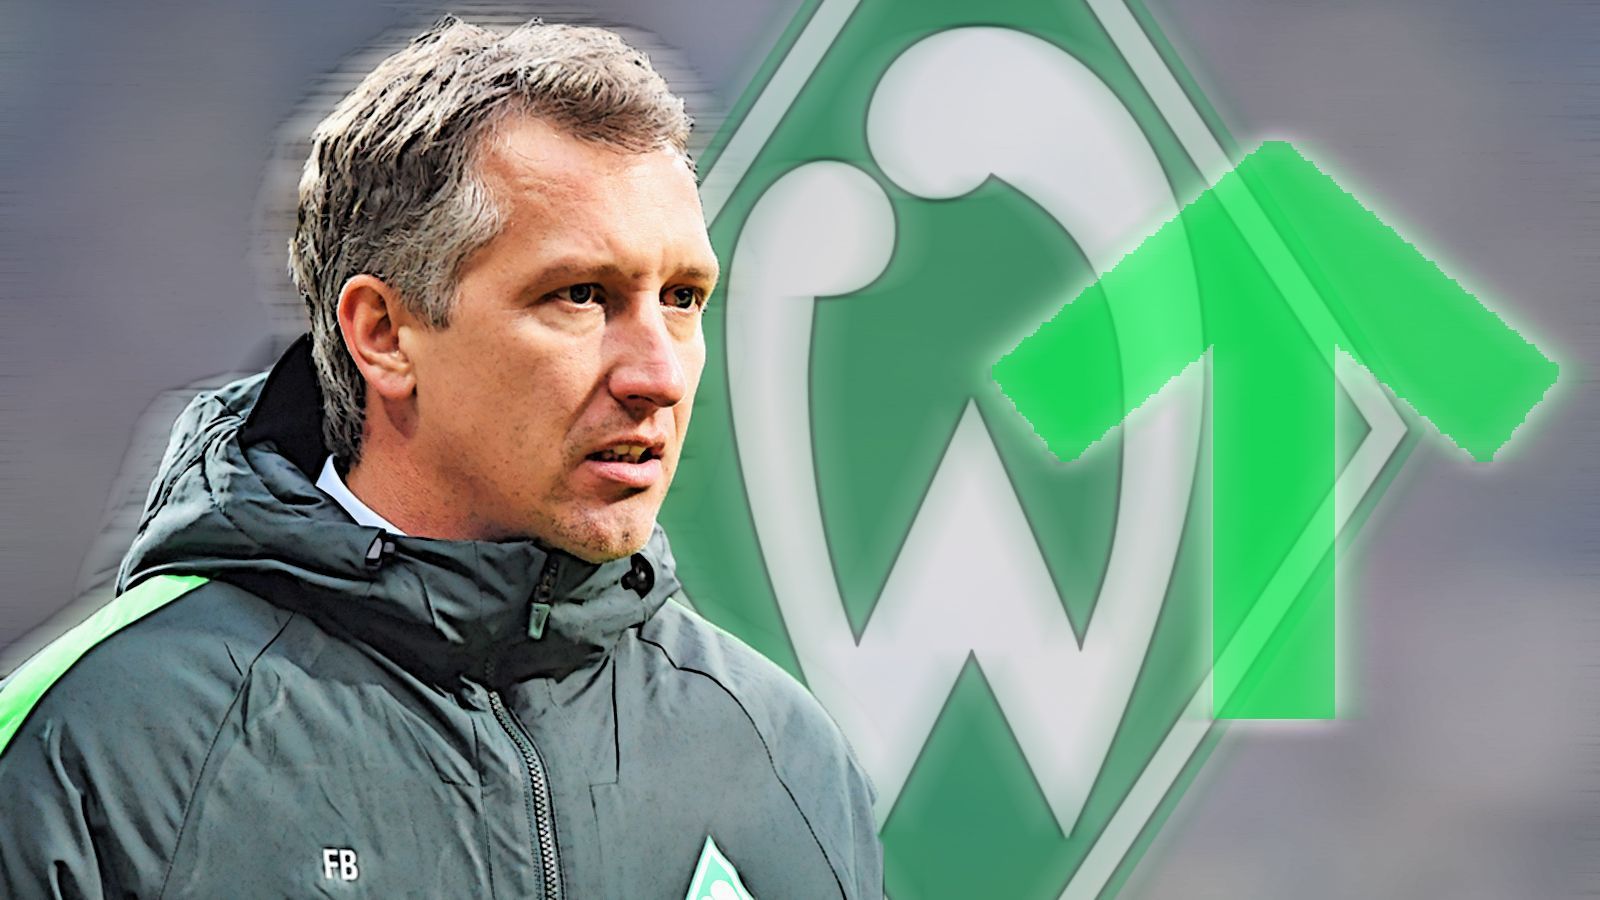 
                <strong>SV Werder Bremen: Die Platzierungen in der Baumann-Ära</strong><br>
                Nach Jahren im unteren Tabellenbereich geht es unter Baumann bergauf. Bremen wurde nach jeweils ganz schlechten ersten Saisonwochen respektive -monaten 8. (Saison 16/17 - 45 Punkte), 11. (Saison 17/18 - 42 Punkte) und hat in der aktuellen Saison noch intakte Chancen auf einen Platz in der Europa League, zudem stehen die Grün-Weißen im Halbfinale des DFB-Pokals. Des Weiteren wird attraktiver Fußball gespielt und das Duo Kohfeldt/Baumann hat wieder eine gewisse Ruhe sowie Konstanz in den Verein gebracht. All das fing mit der Installierung von Baumann als verantwortlicher Geschäftsführer Sport an. Doch lassen wir die Zahlen sprechen ...
              